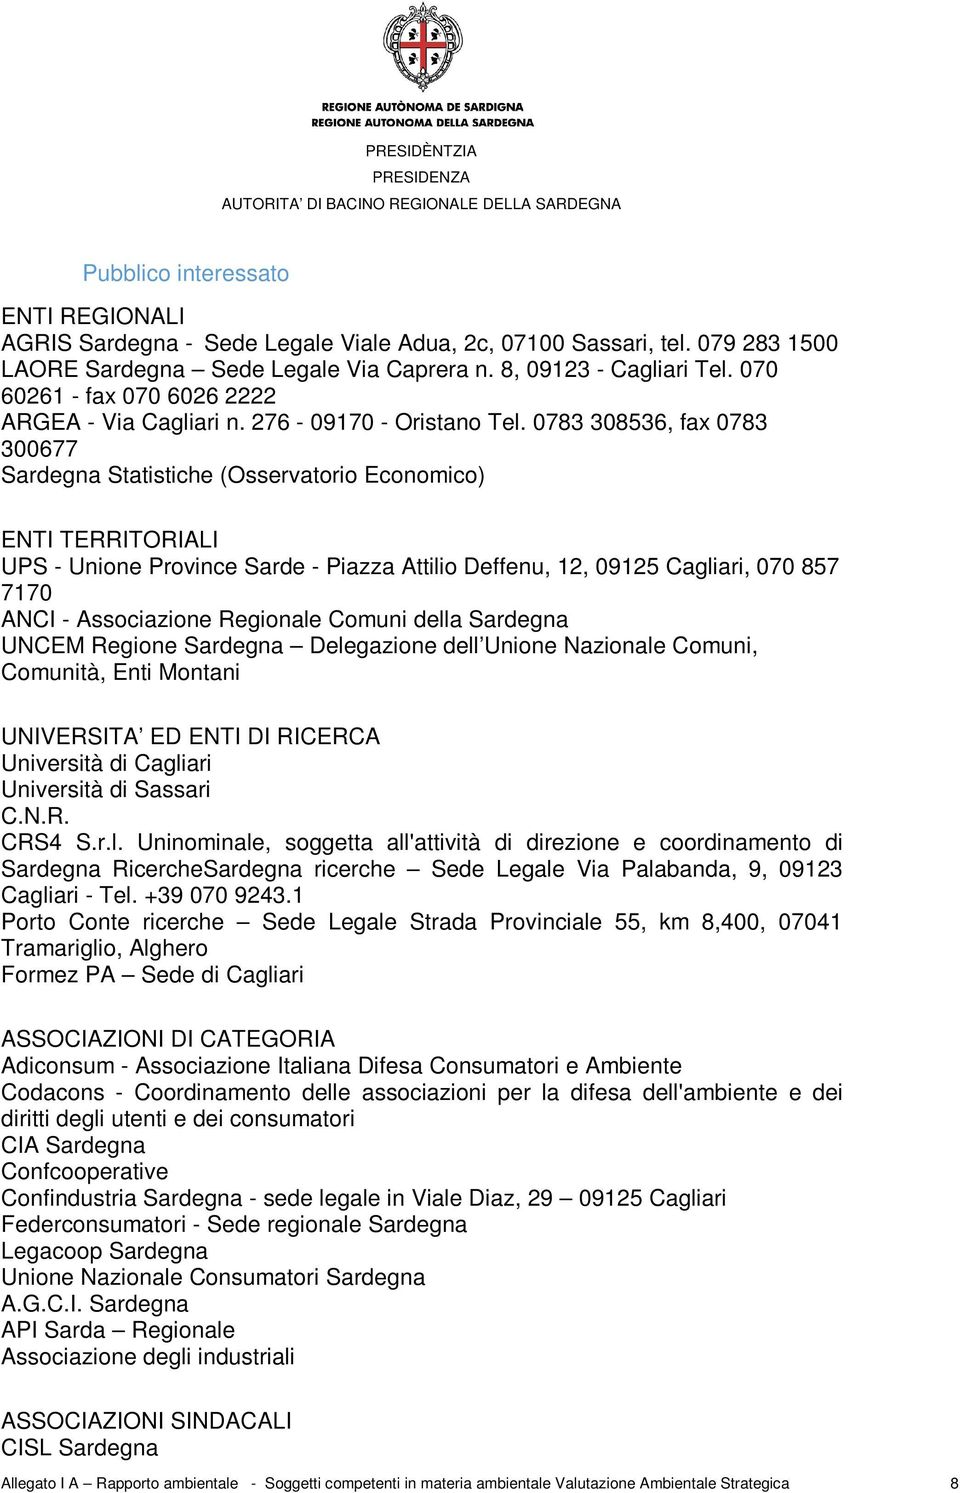 0783 308536, fax 0783 300677 Sardegna Statistiche (Osservatorio Economico) ENTI TERRITORIALI UPS - Unione Province Sarde - Piazza Attilio Deffenu, 12, 09125 Cagliari, 070 857 7170 ANCI - Associazione